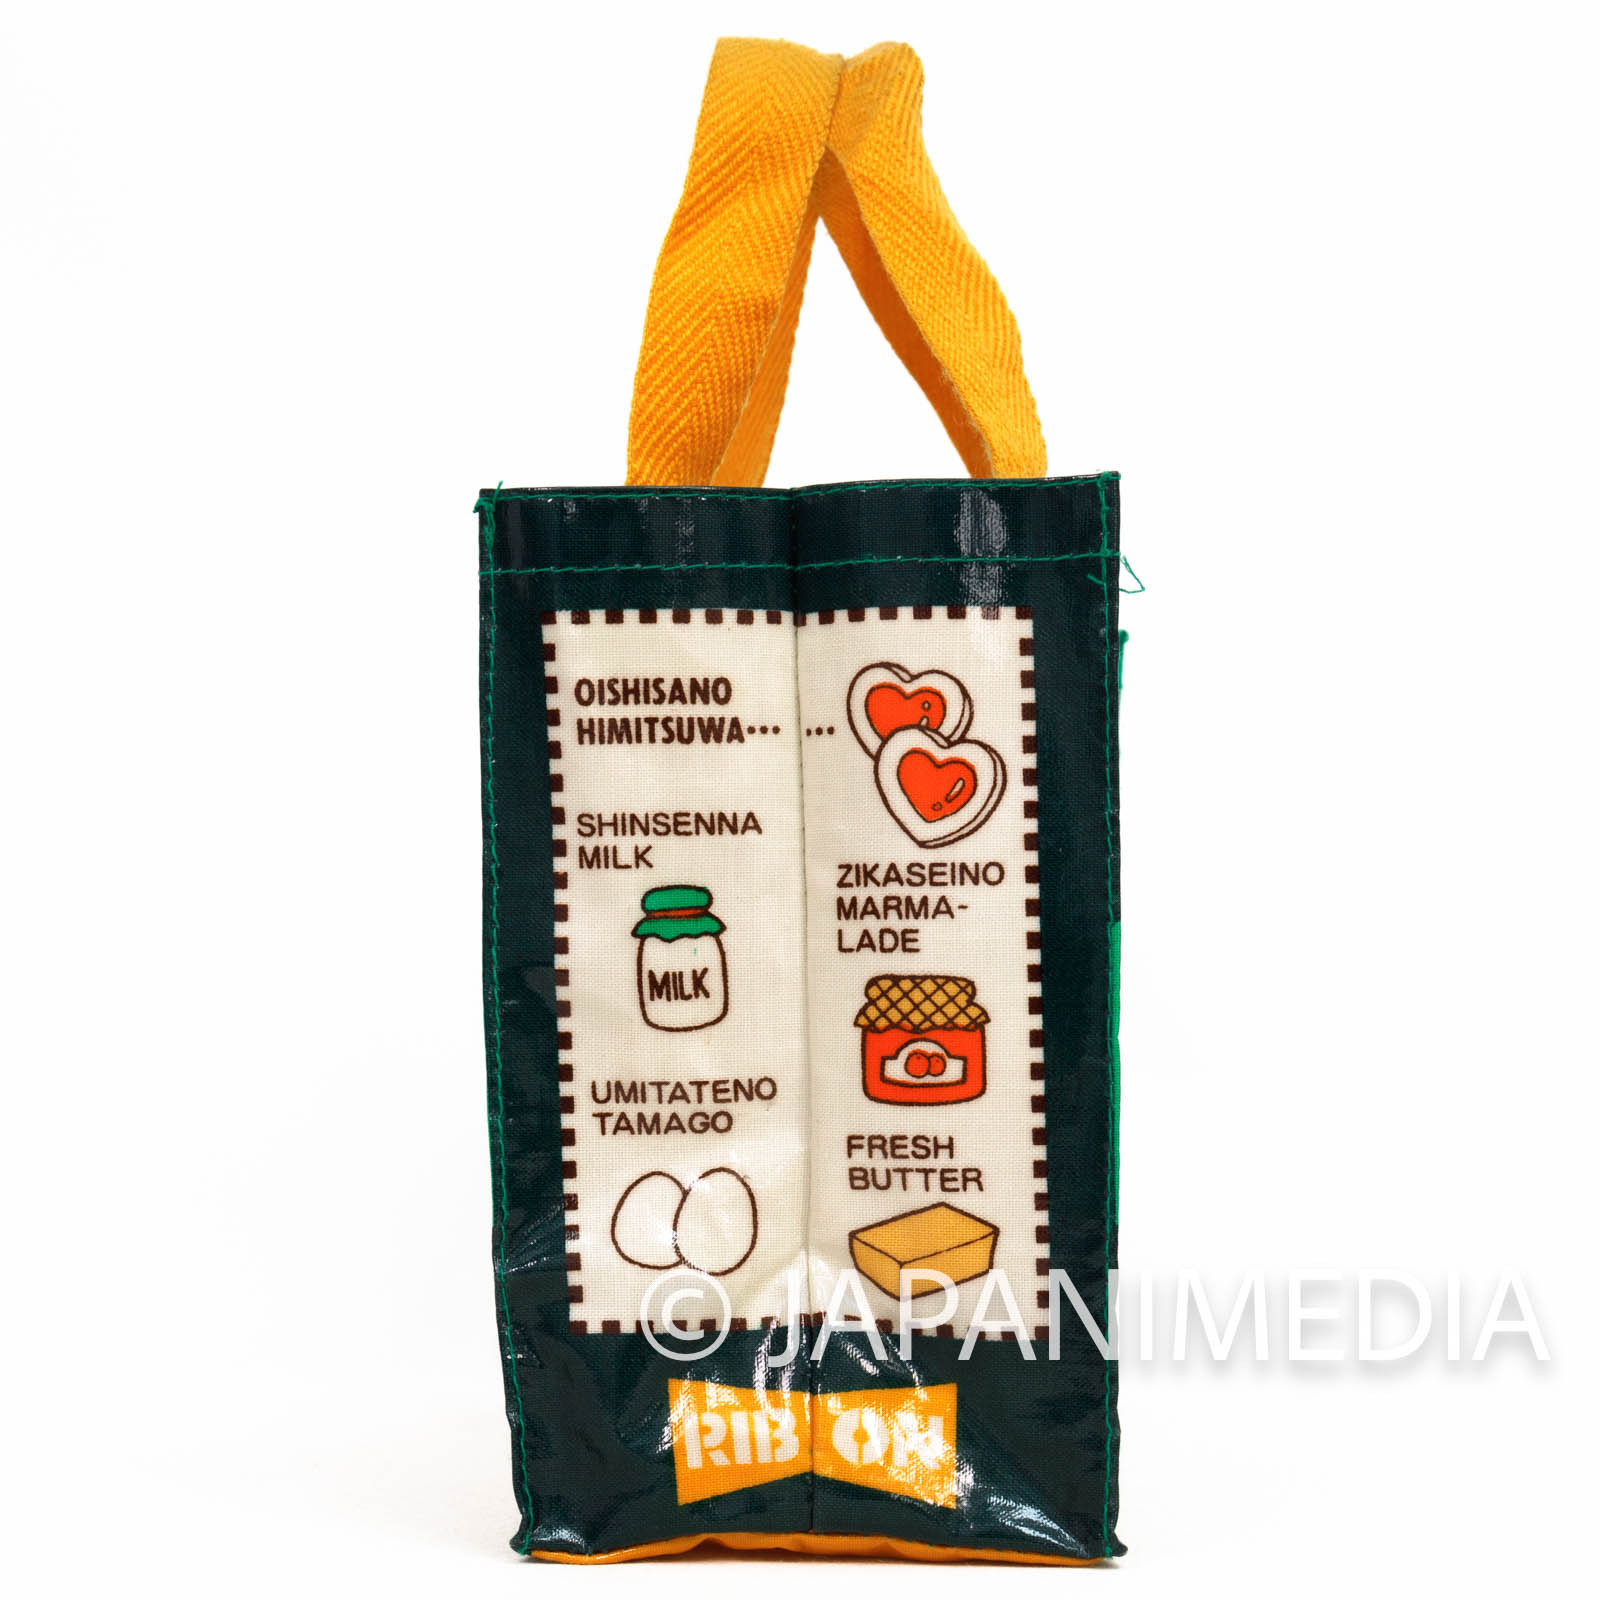 Marmalade Boy Miki Koishikawa Mini Tote Bag RIBON 1993